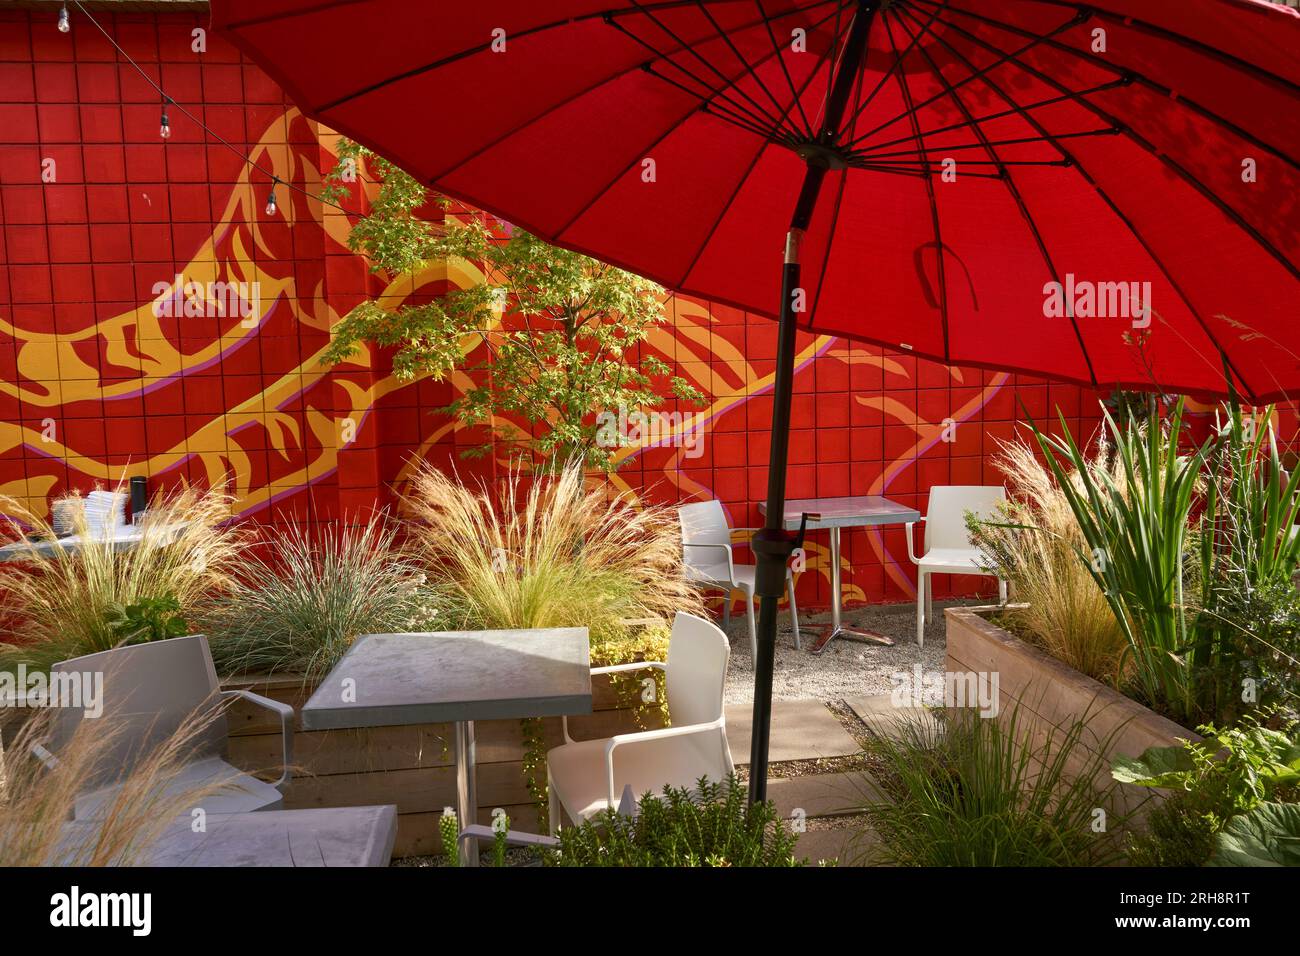 Gemütlicher Sitzbereich im Restaurant im Freien mit rotem Sonnenschirm und Pflanzen Stockfoto